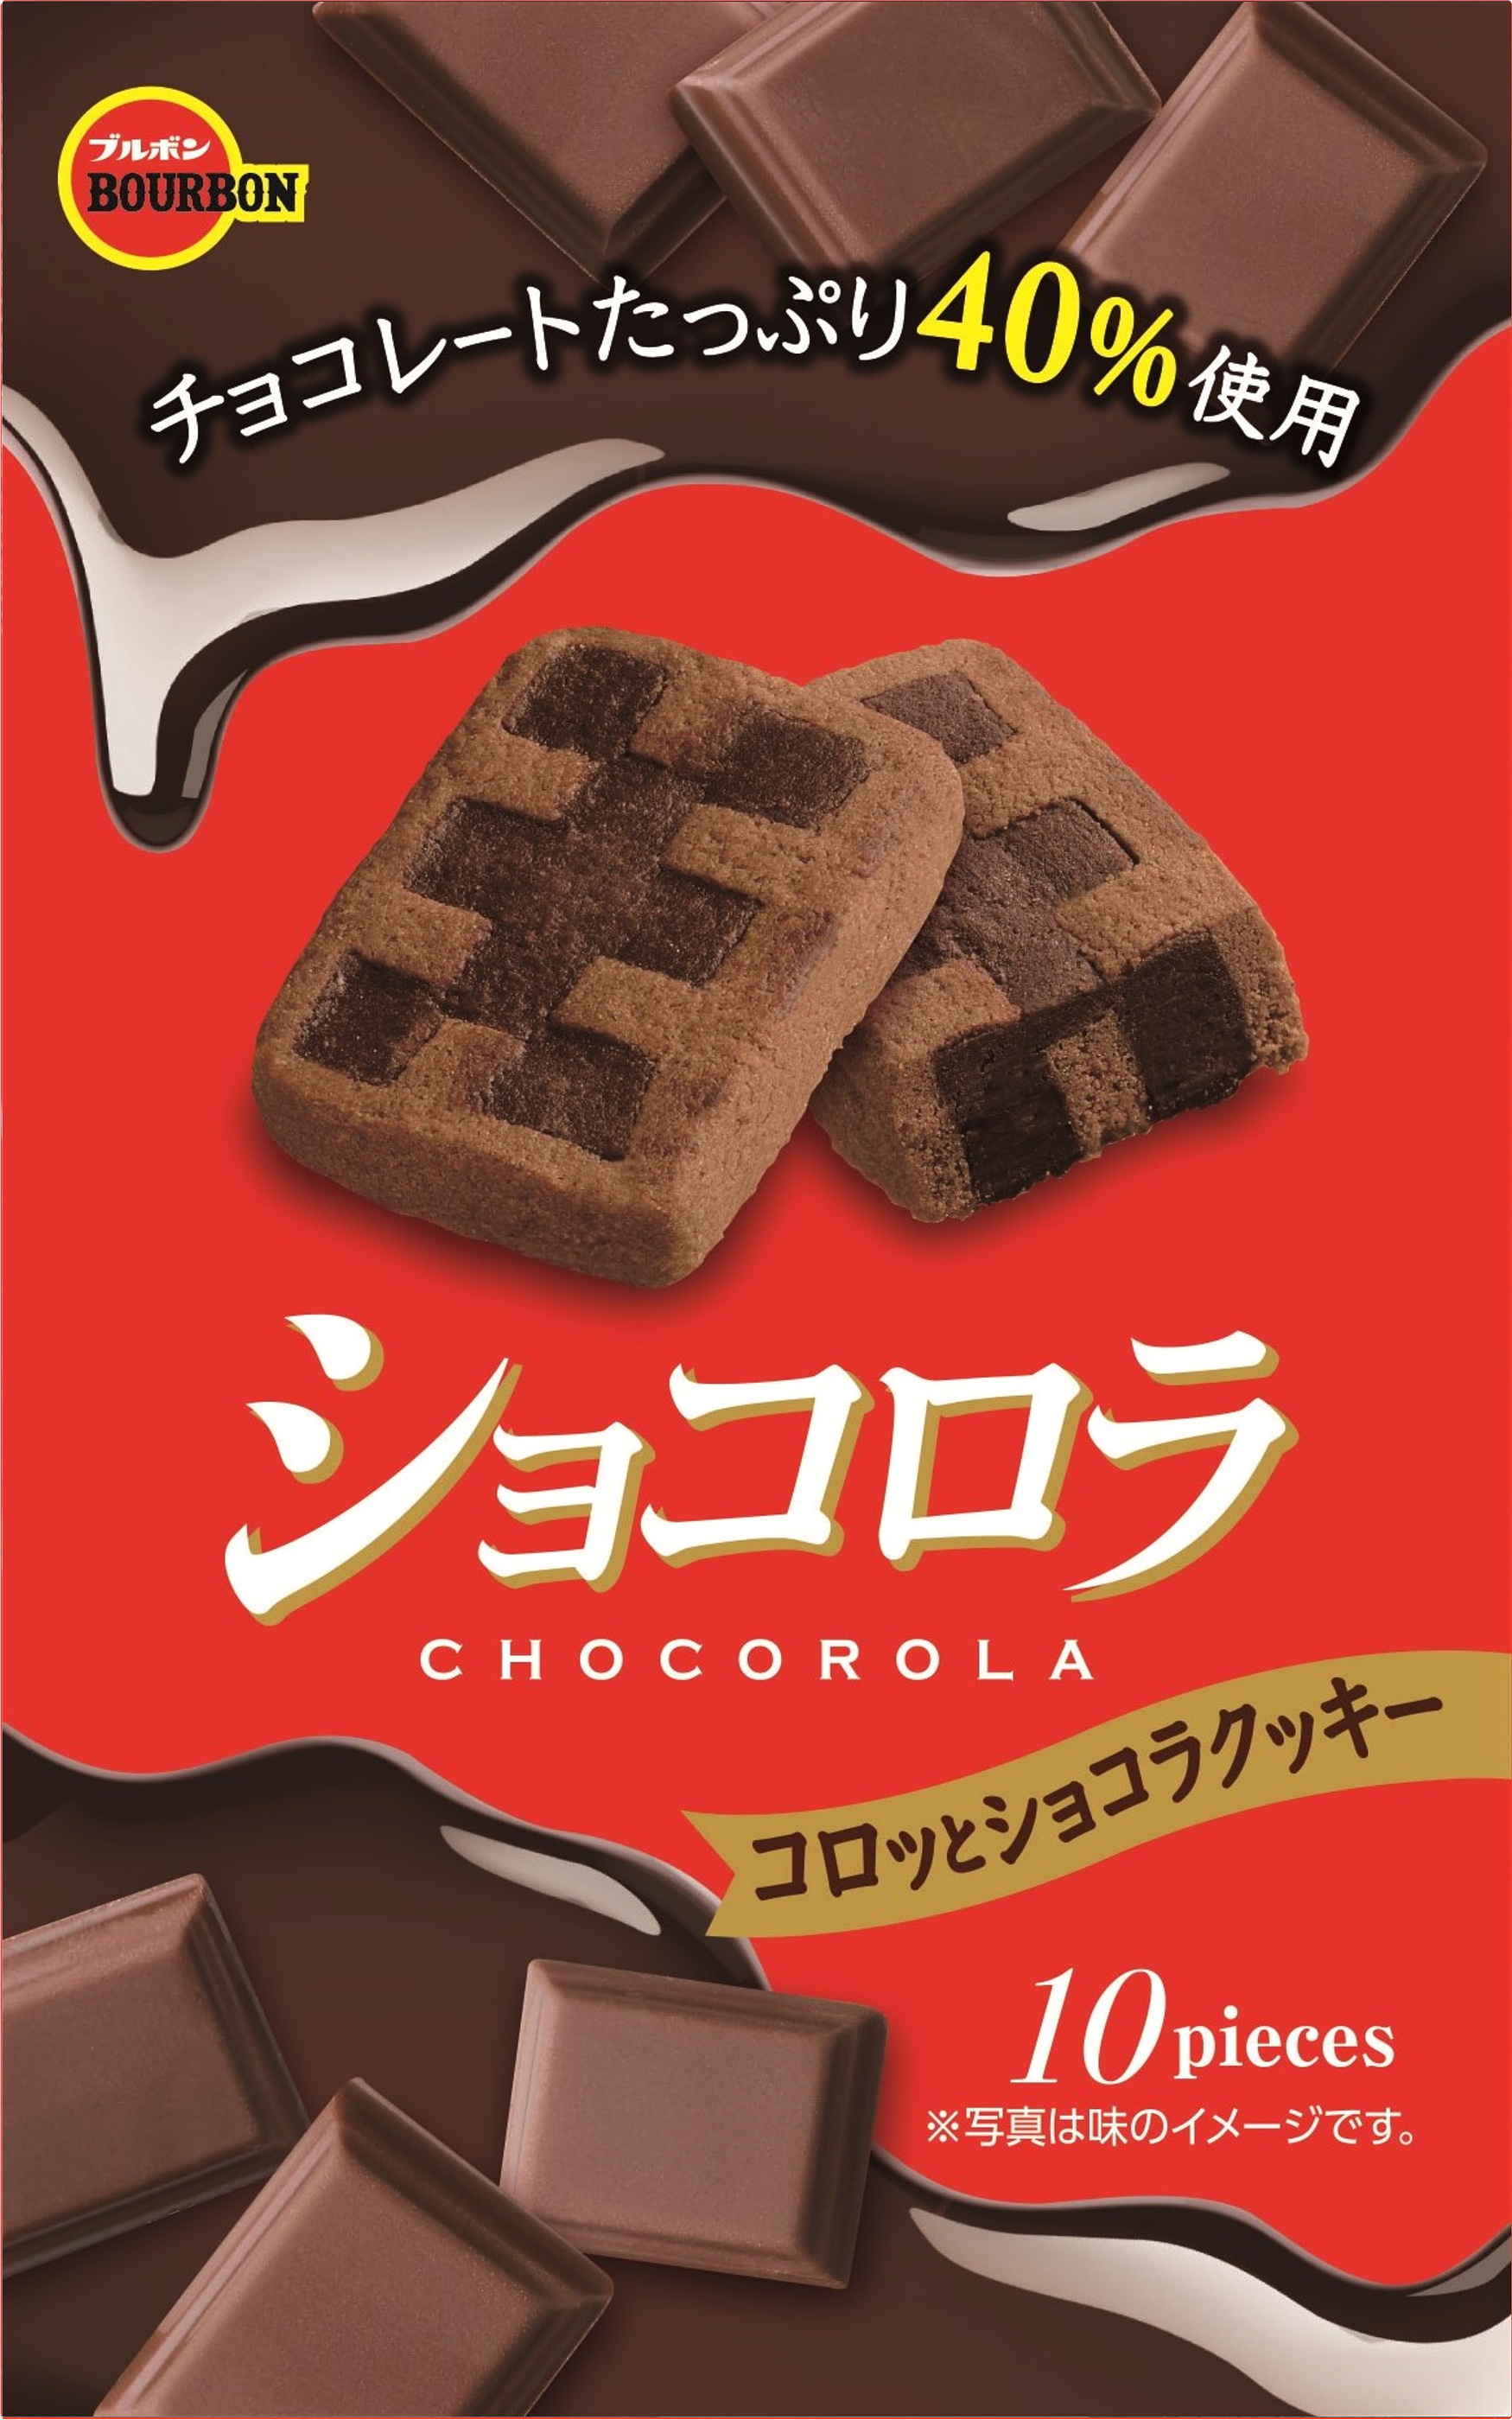 ブルボン チョコが手につかない新しいチョコレートクッキー フォンティア ショコロラ を2月15日 火 に新発売 Sankeibiz サンケイビズ 自分を磨く経済情報サイト